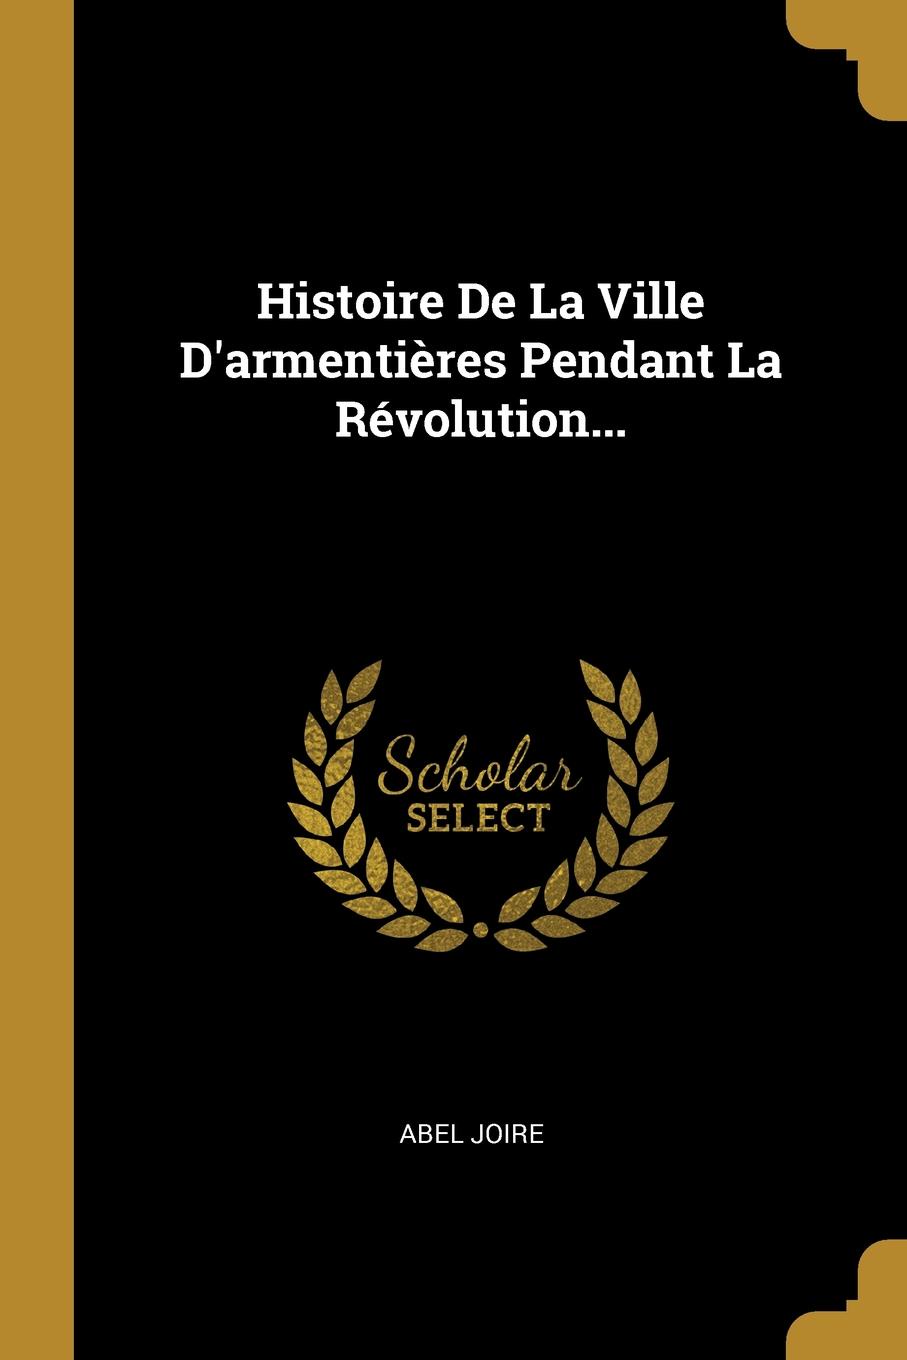 Histoire De La Ville D.armentieres Pendant La Revolution...